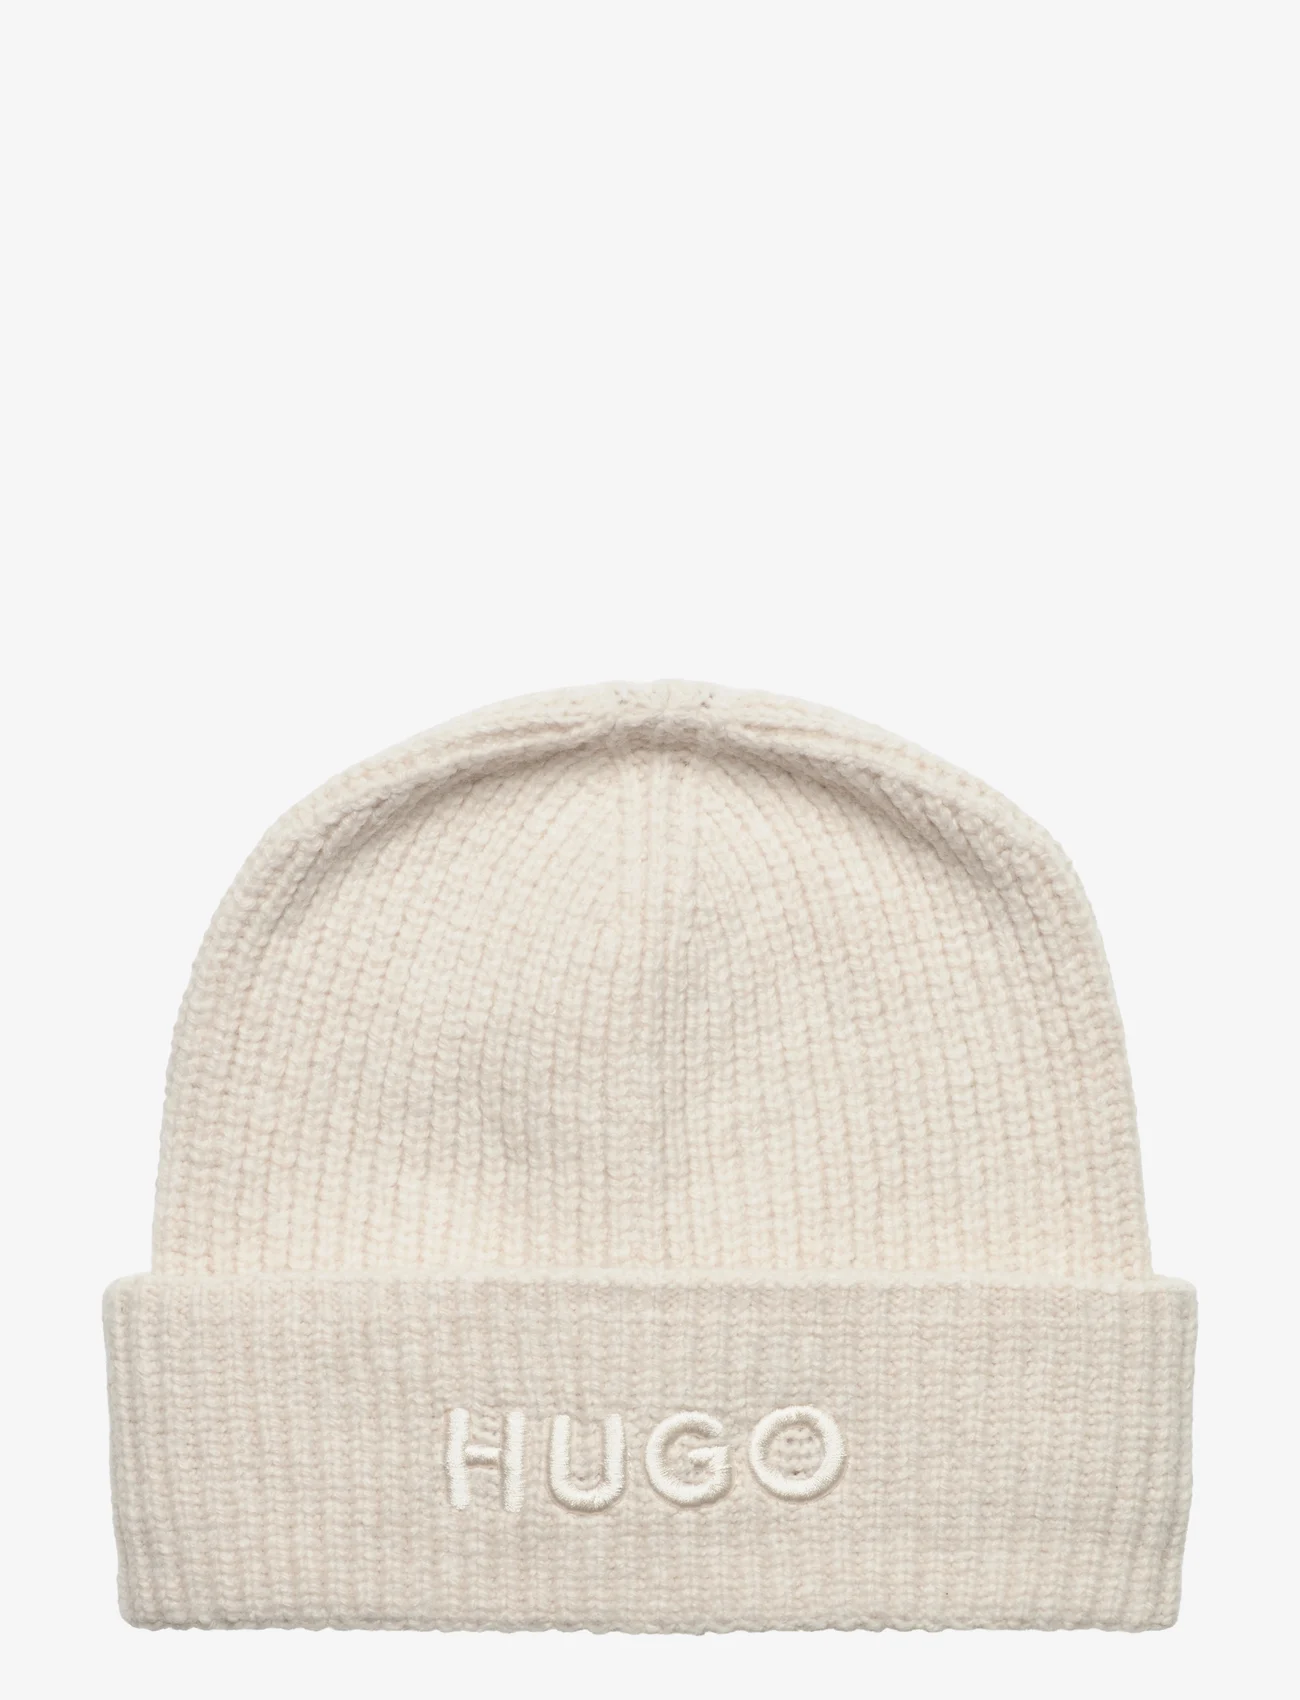 HUGO - Social_hat - luer - open white - 0